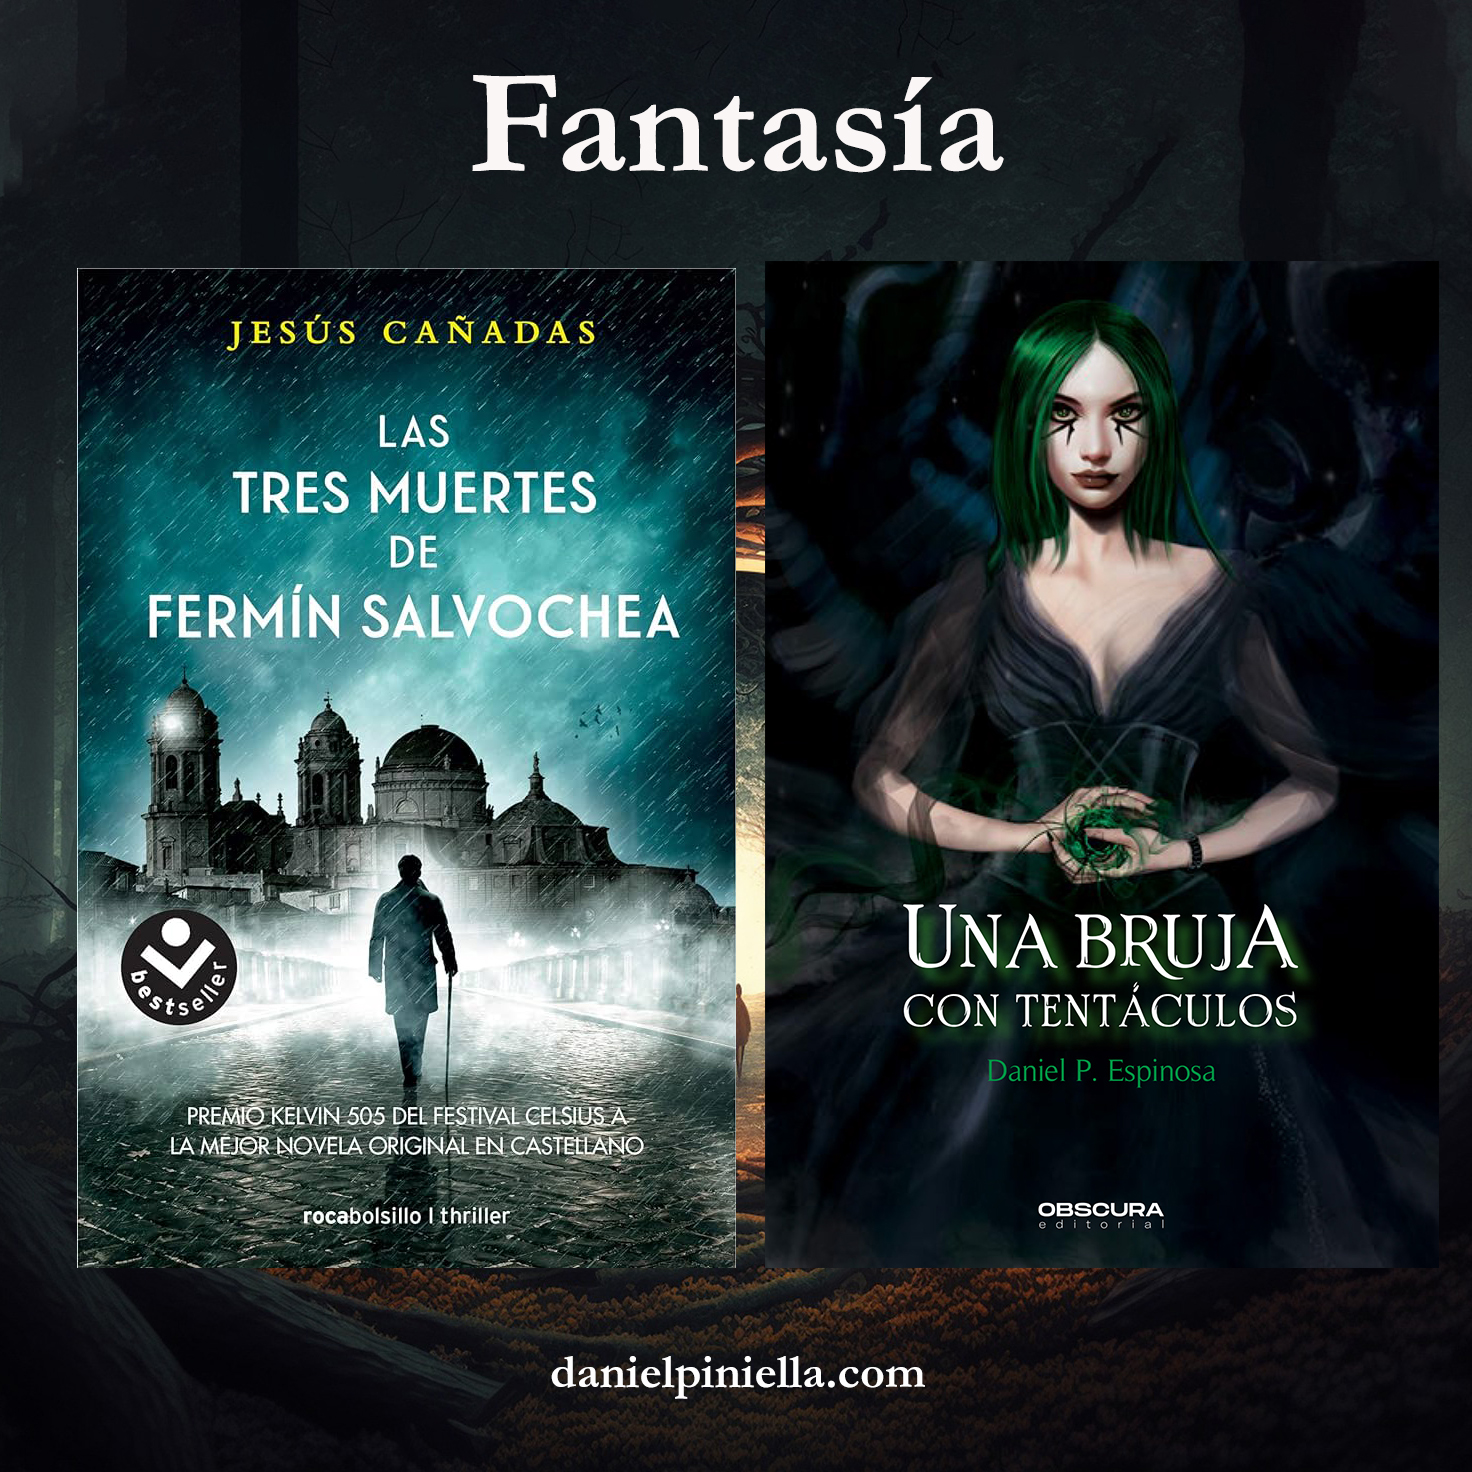 Reseñas de fantasía oscura: Las tres muertes de Fermin Salvochea de Jesús Cañadas y Una bruja con tentáculos de Daniel P. Espinosa